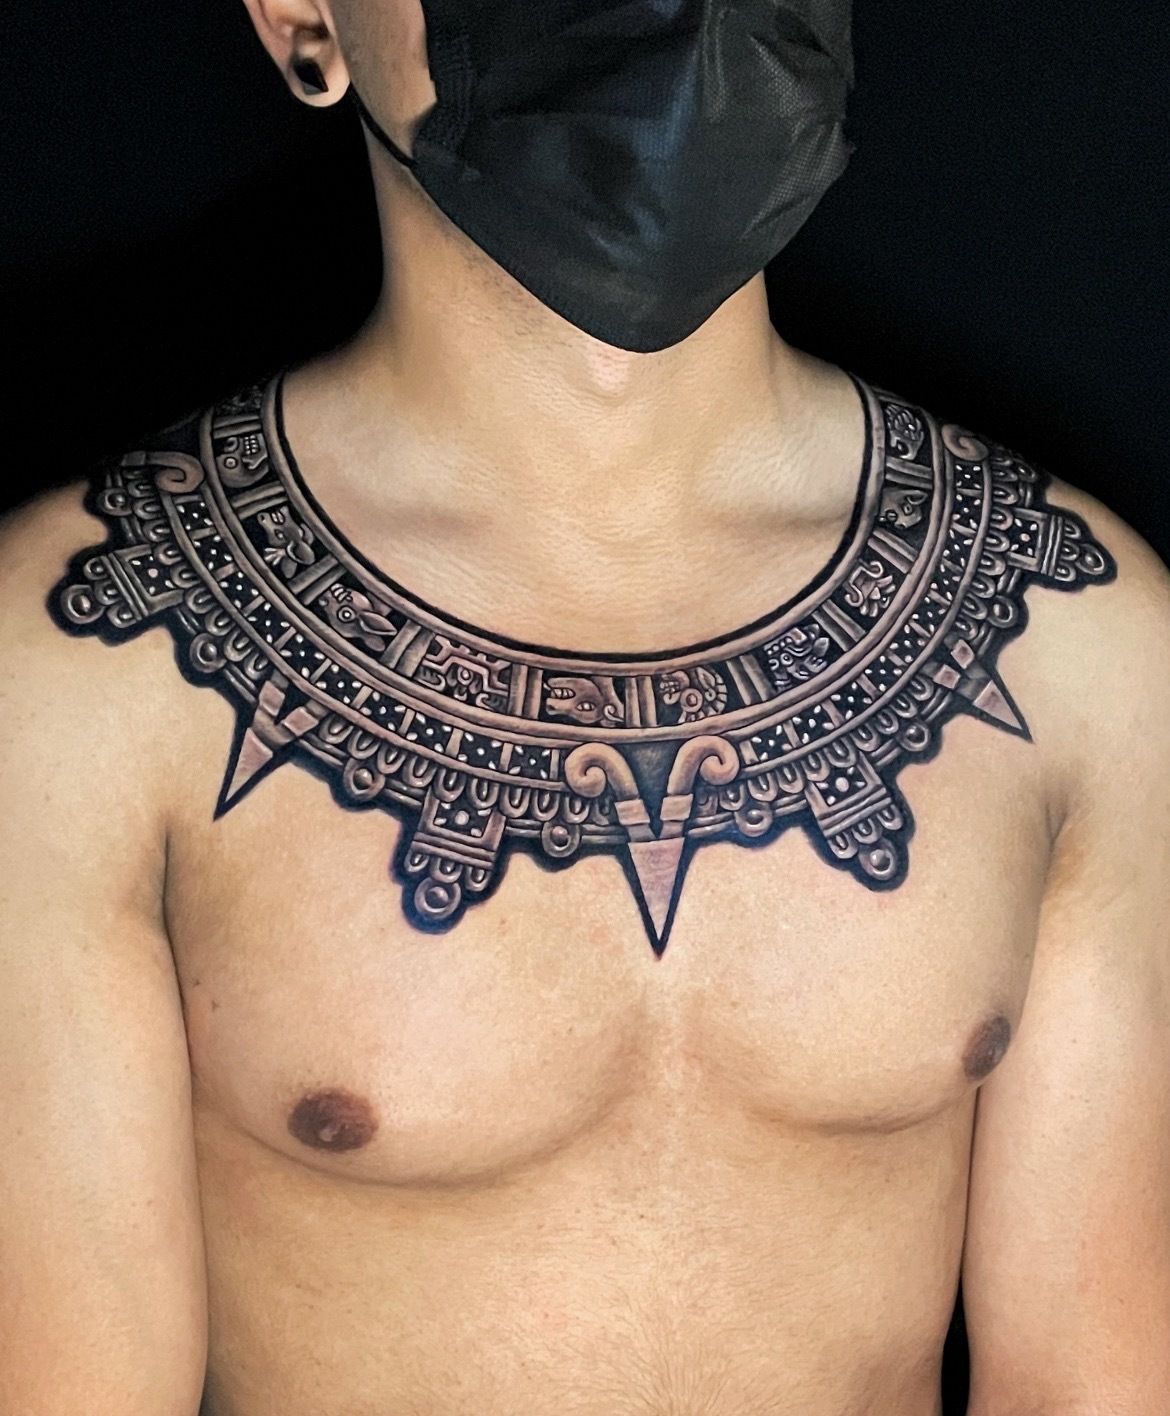 Impressive Aztec Tattoos Part 2  Tattoodo